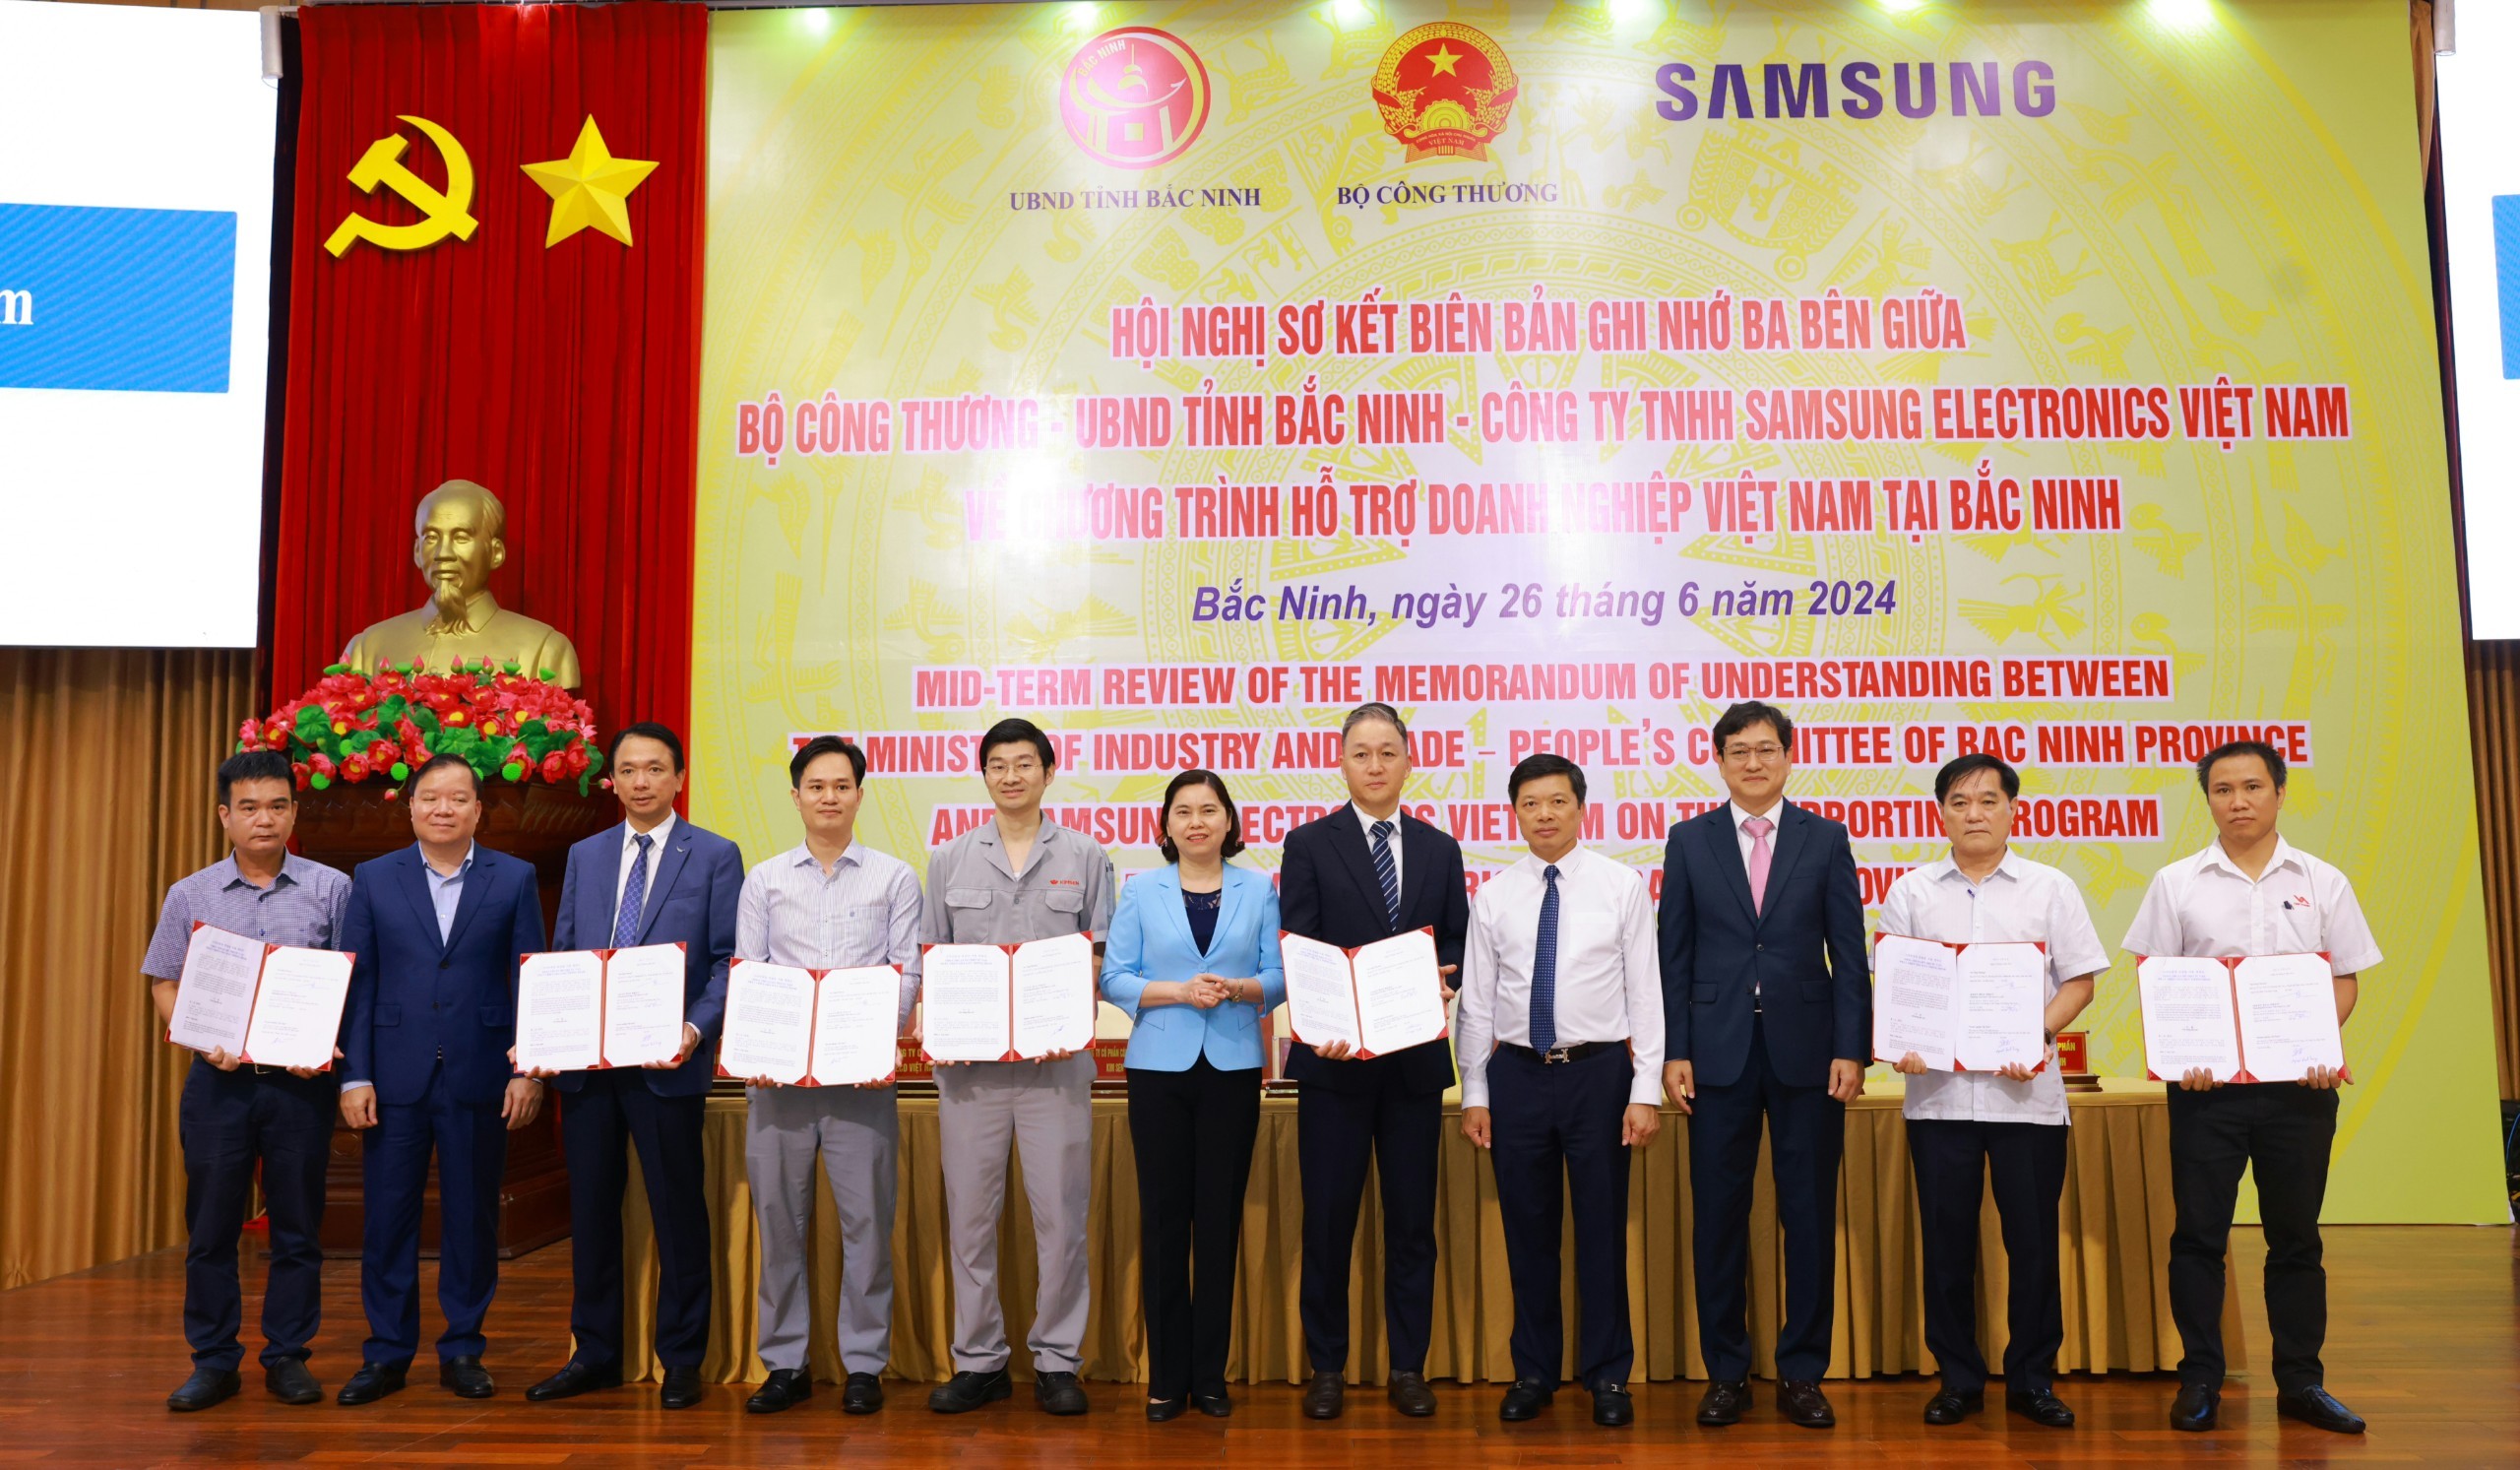 Bộ Công Thương, Samsung Việt Nam và các doanh nghiệp ký kết thỏa thuận hỗ trợ tư vấn cho các doanh nghiệp tại Bắc Ninh tham gia dự án phát triển nhà máy thông minh năm 2024